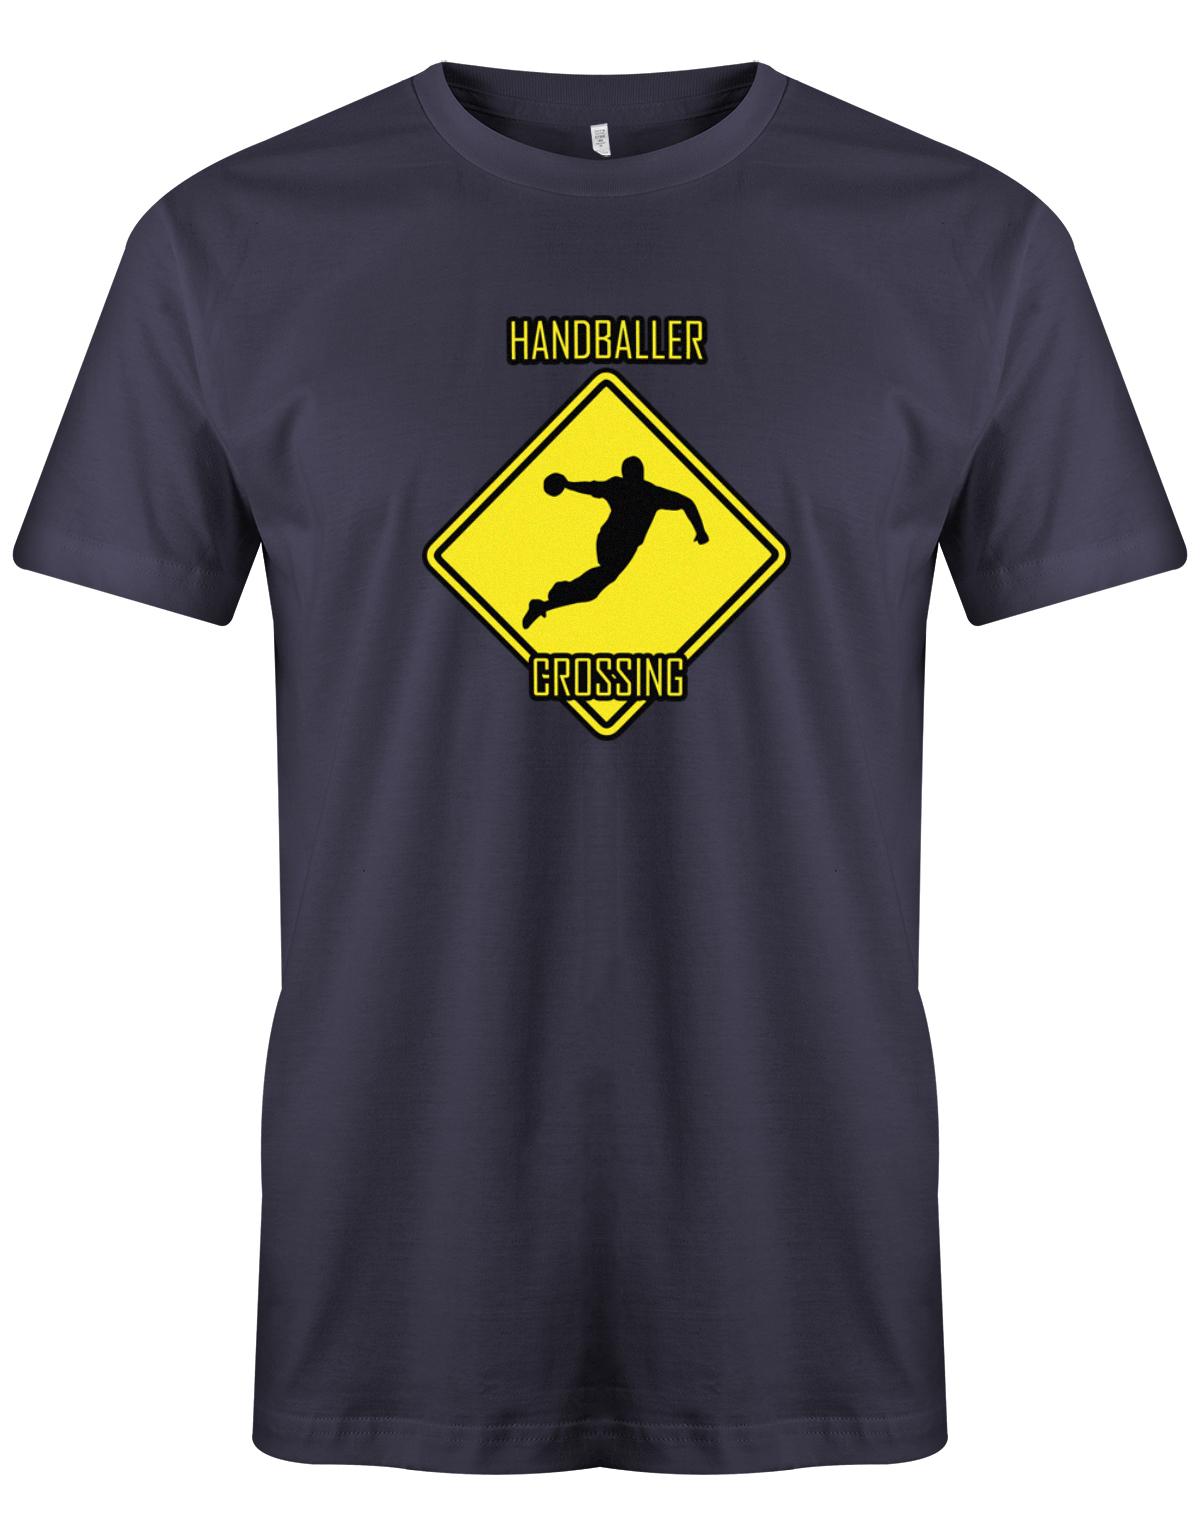 HAndballer-Crossing-Handball-Shirt-Herren-navy